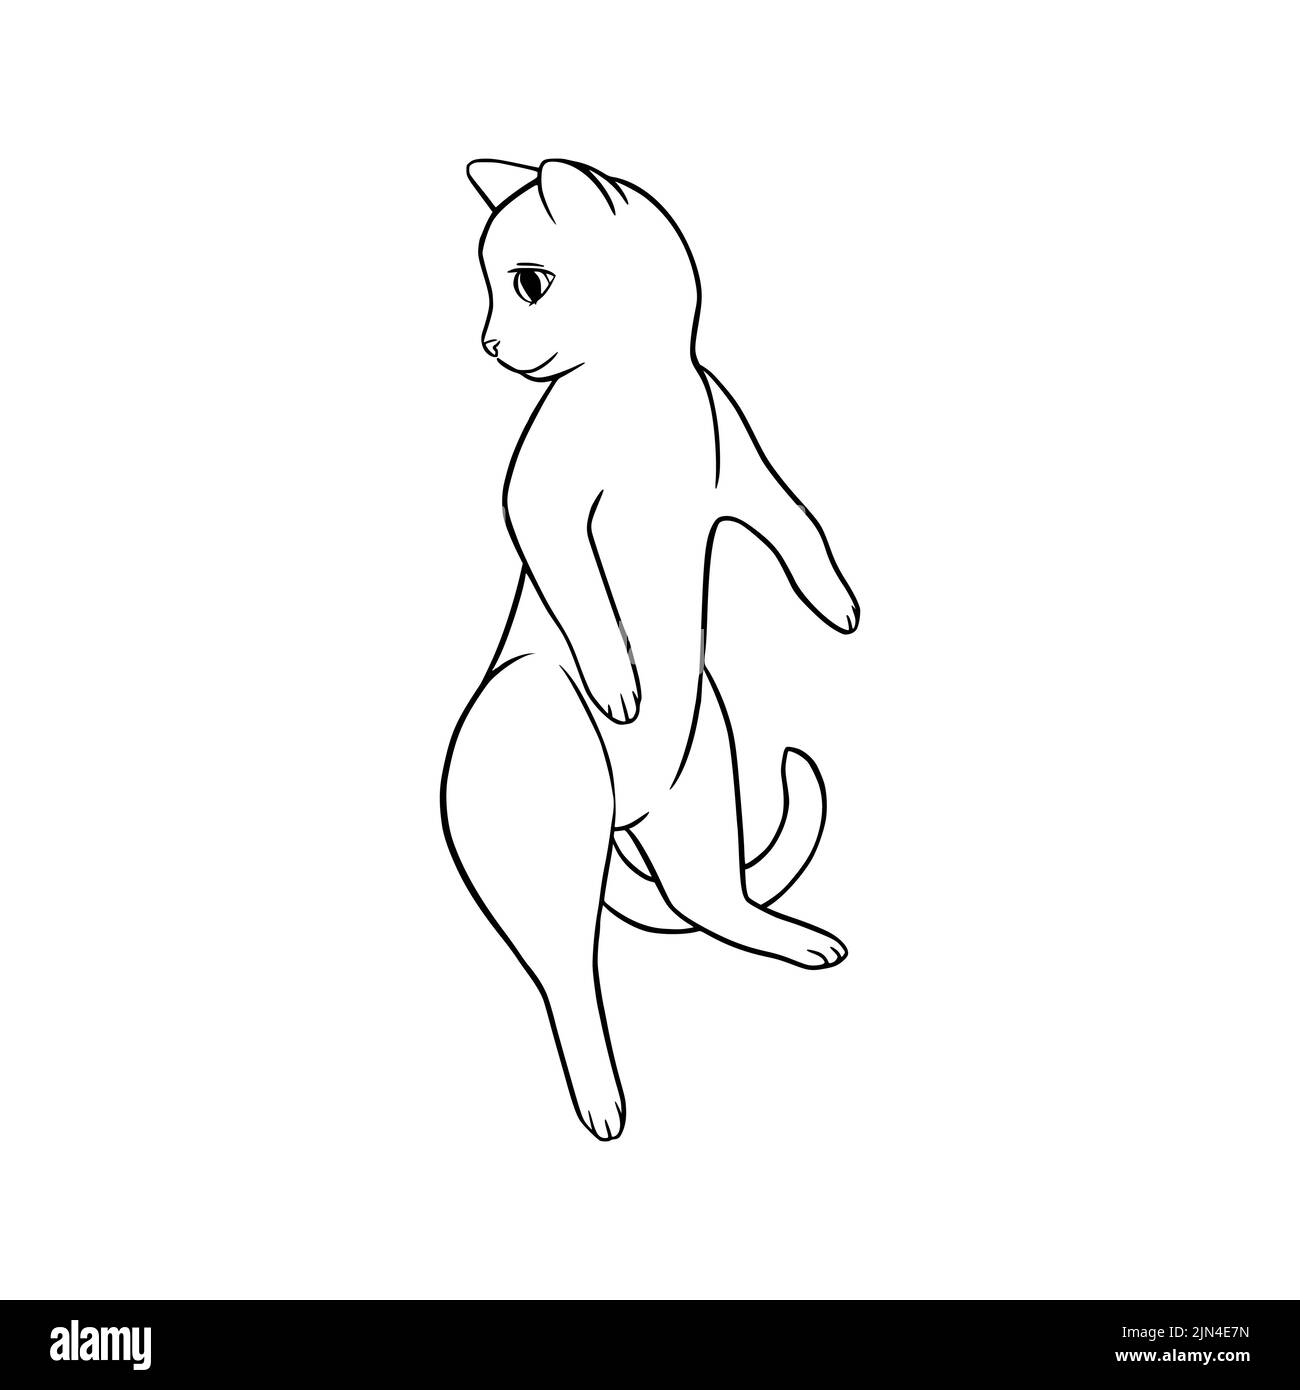 Esquisse noire de chat couché. Chat joueur dans un style doodle. Illustration vectorielle mignonne isolée sur fond blanc Illustration de Vecteur